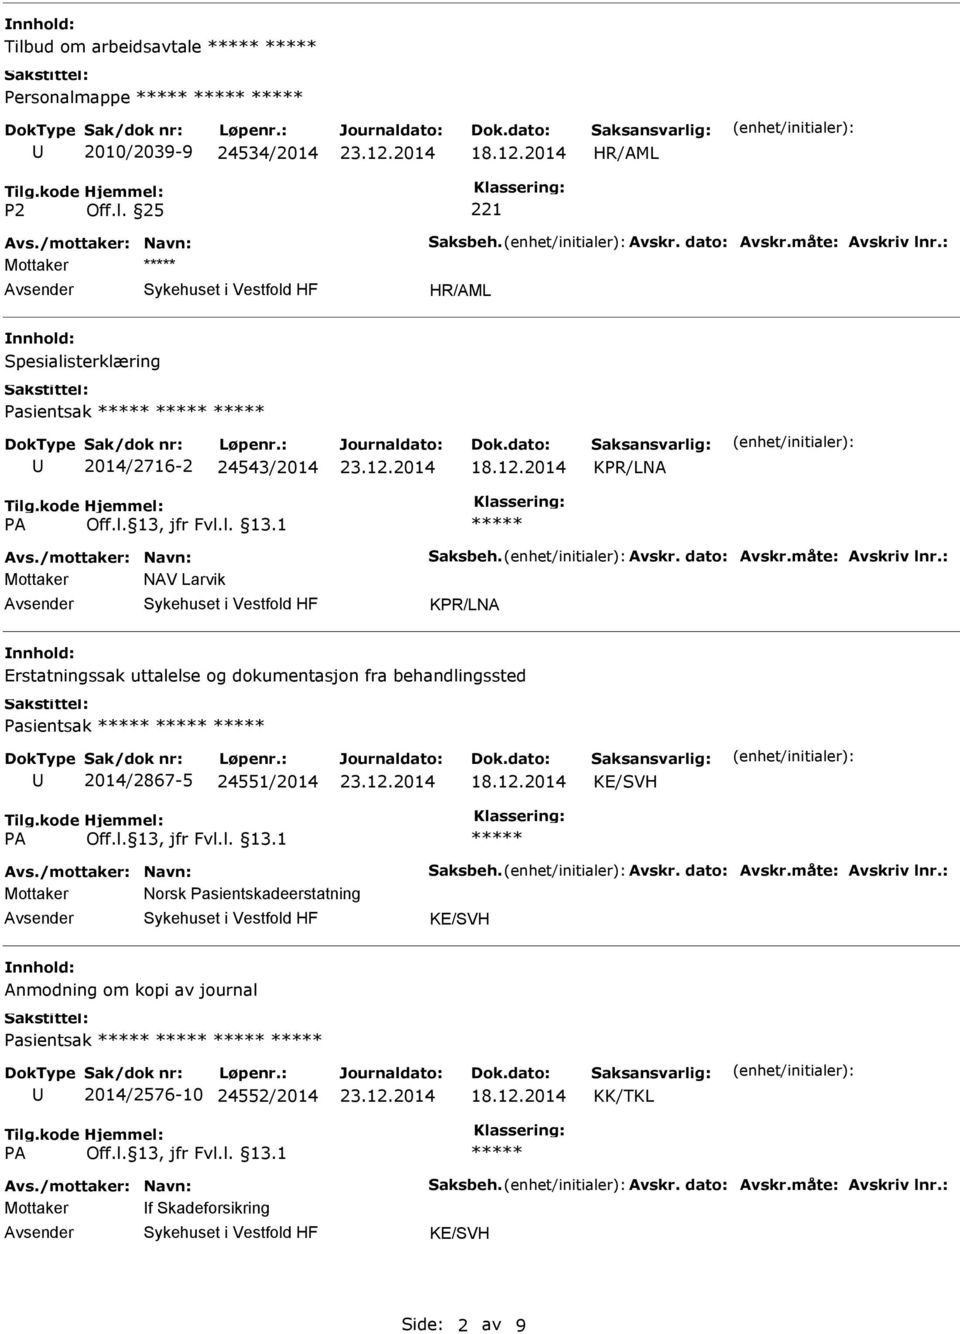 : Mottaker NAV Larvik KPR/LNA Erstatningssak uttalelse og dokumentasjon fra behandlingssted Pasientsak 2014/2867-5 24551/2014 Avs./mottaker: Navn: Saksbeh. Avskr.